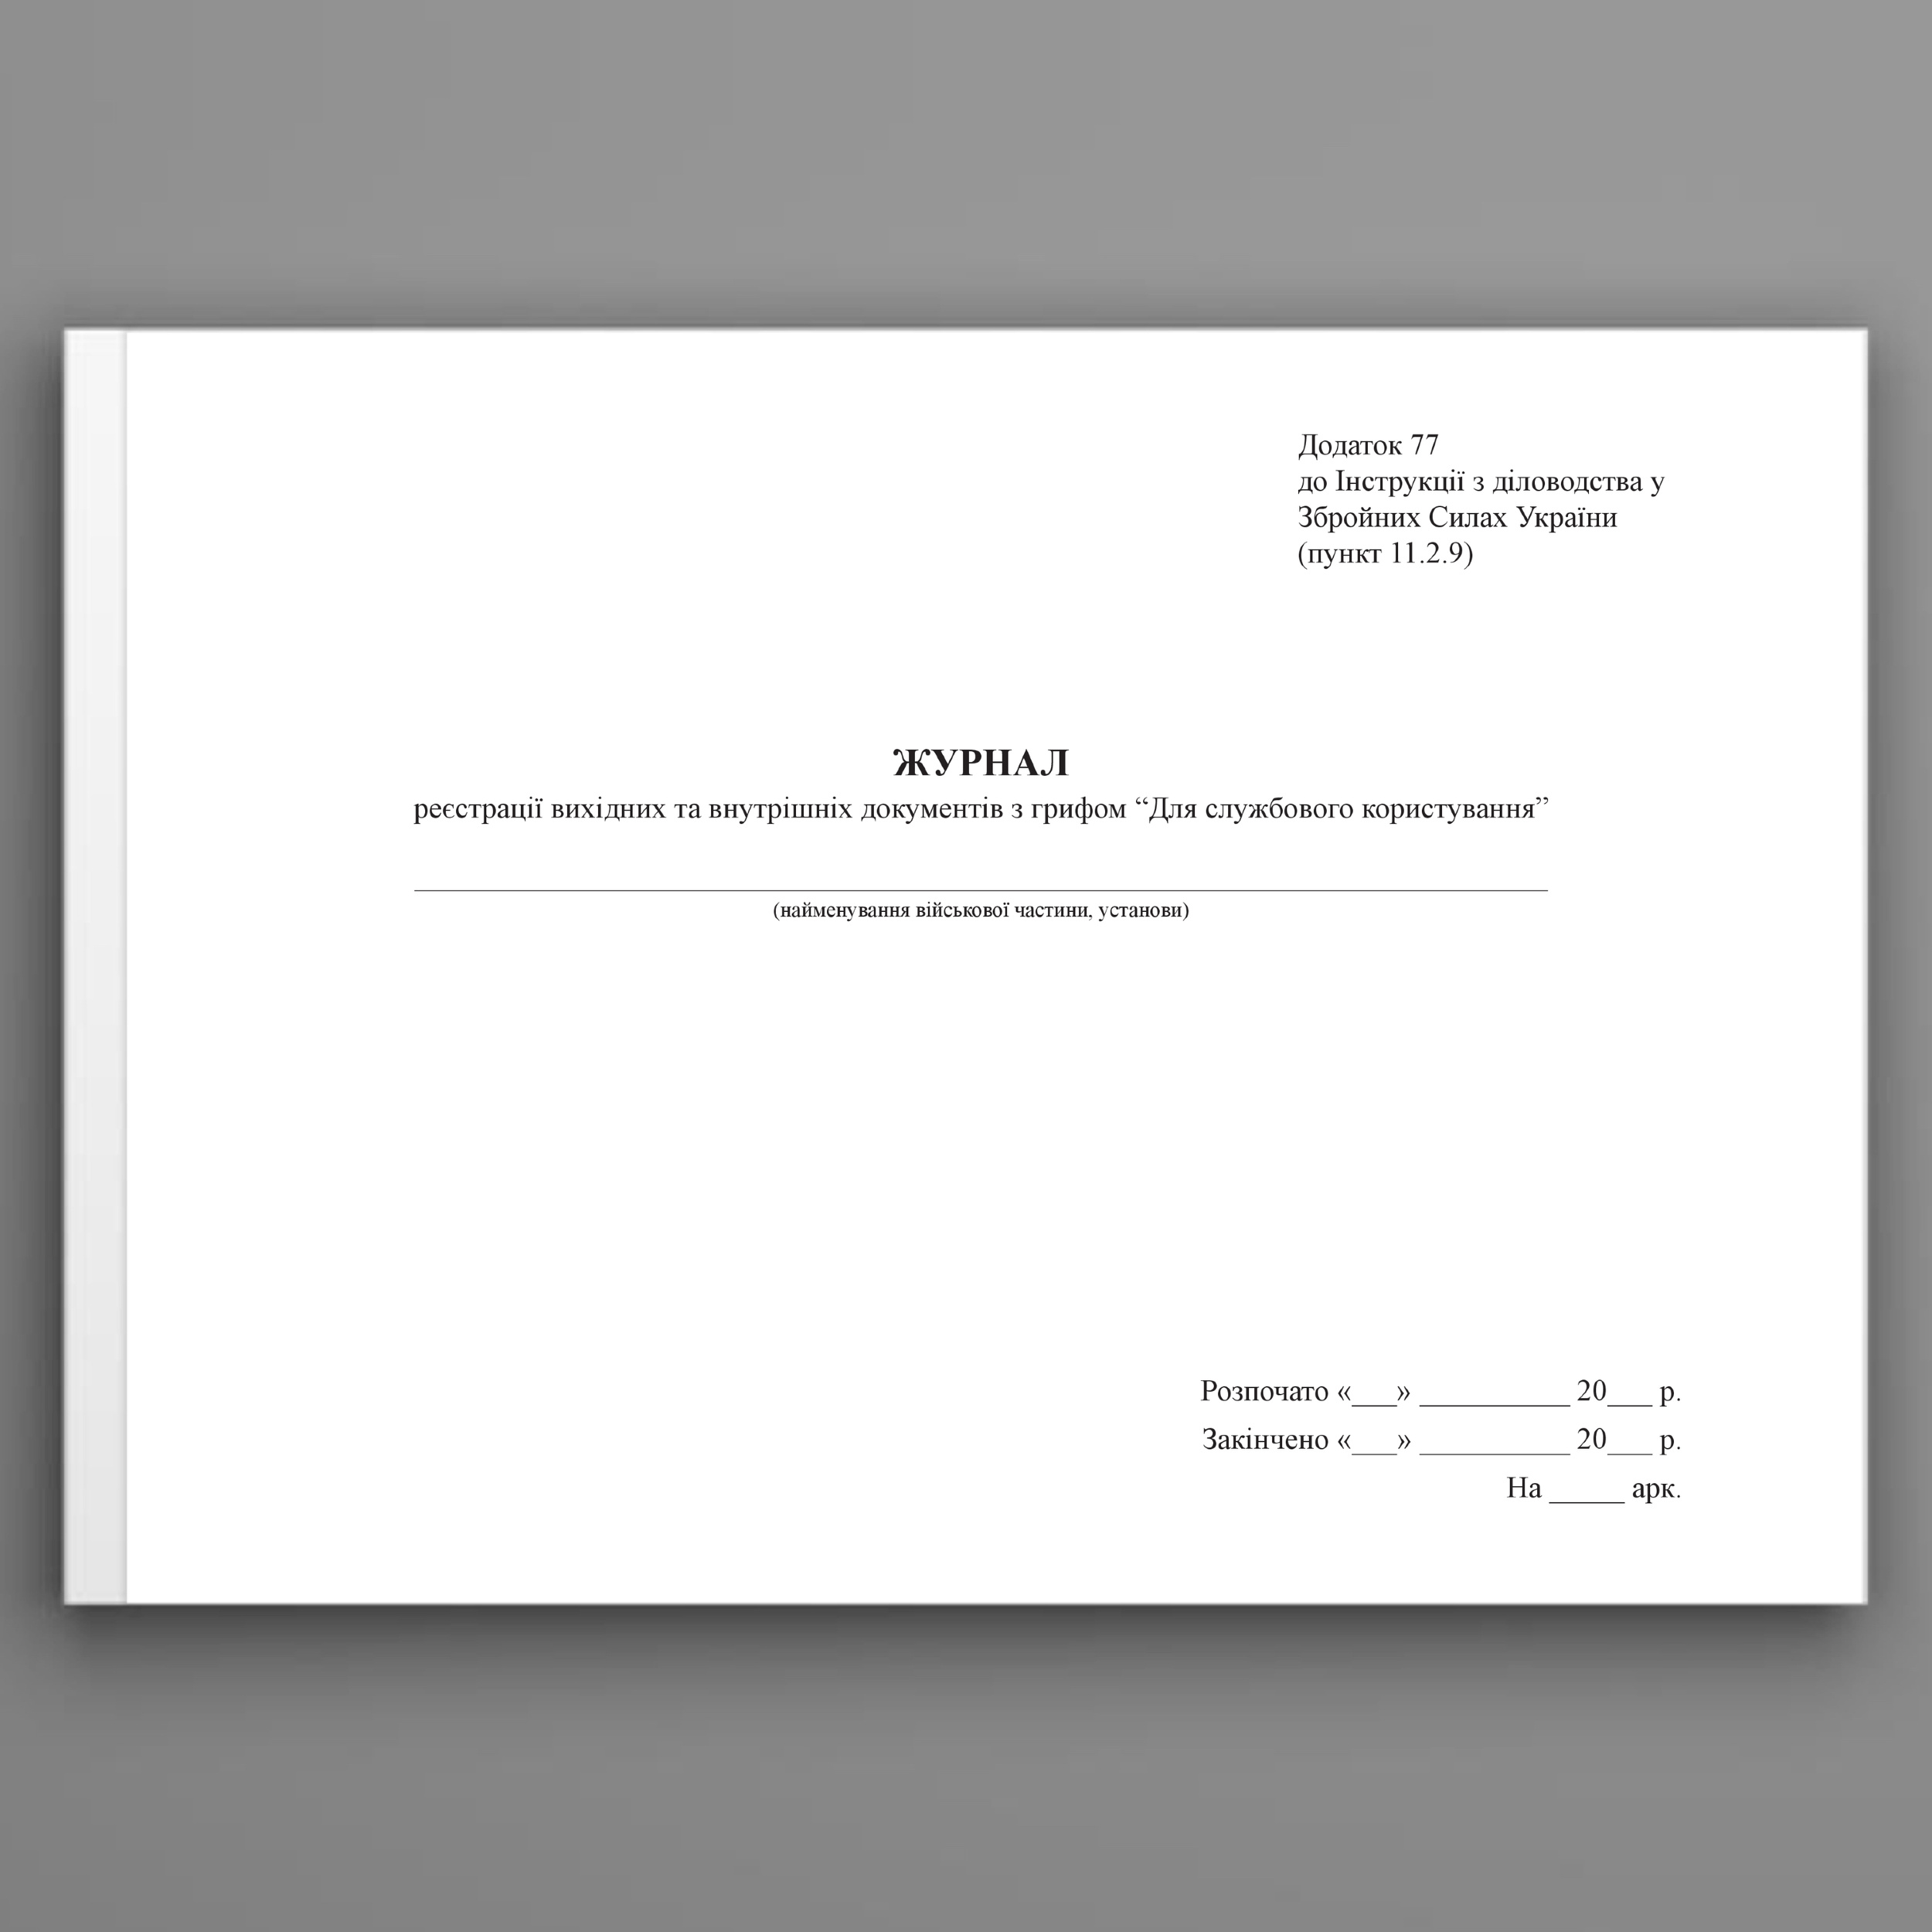 Журнал реєстрації вихідних та внутрішніх документів з грифом “Для службового користування”, додаток 77